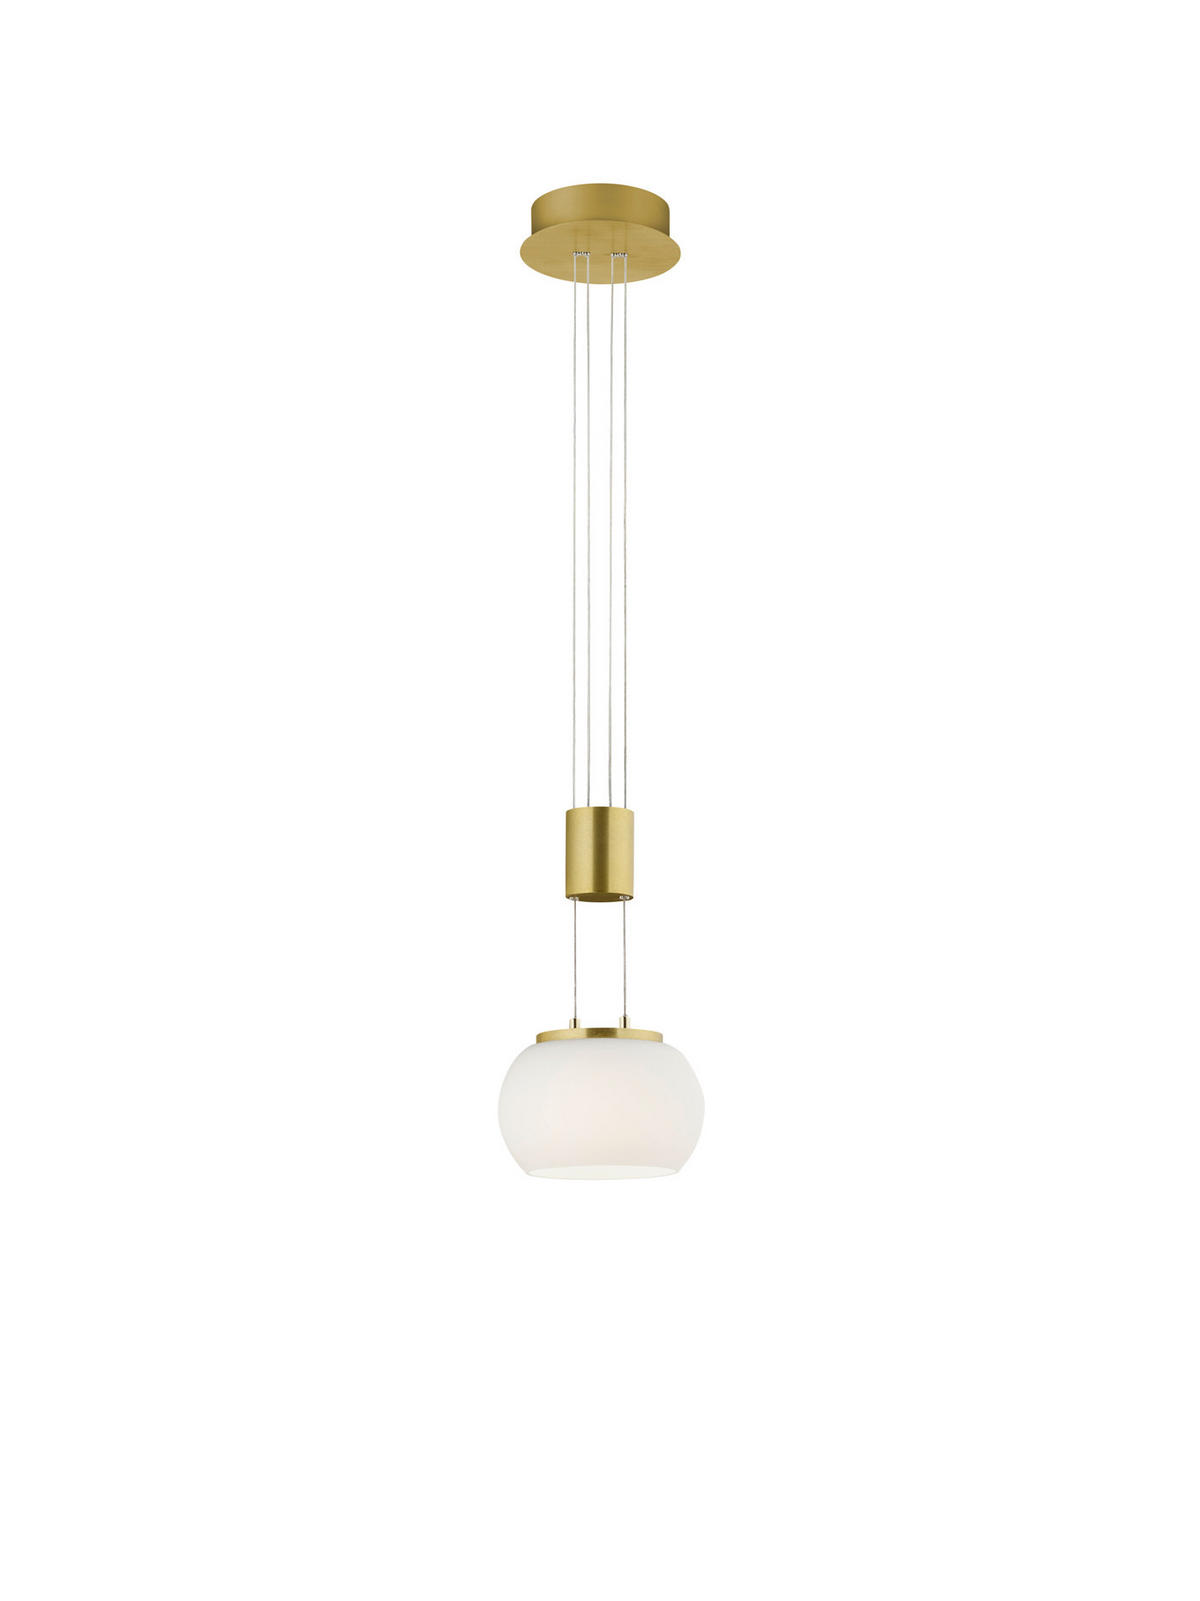 LED-HÄNGELEUCHTE Madison 18/150 cm   - Messingfarben/Weiß, Design, Glas/Metall (18/150cm) - Trio Leuchten